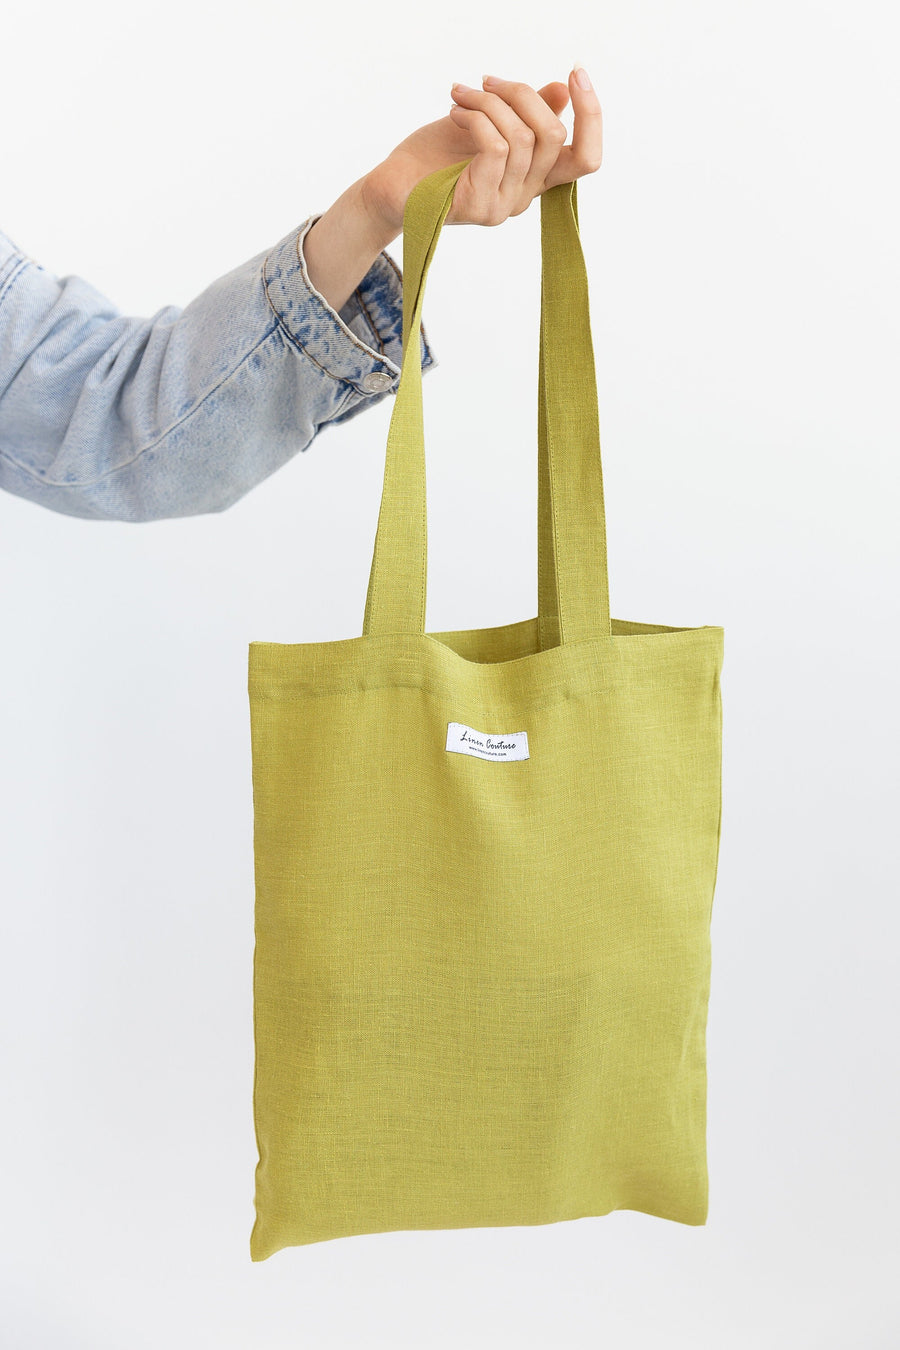 Pear linen tote bag - Linen Couture Boutique